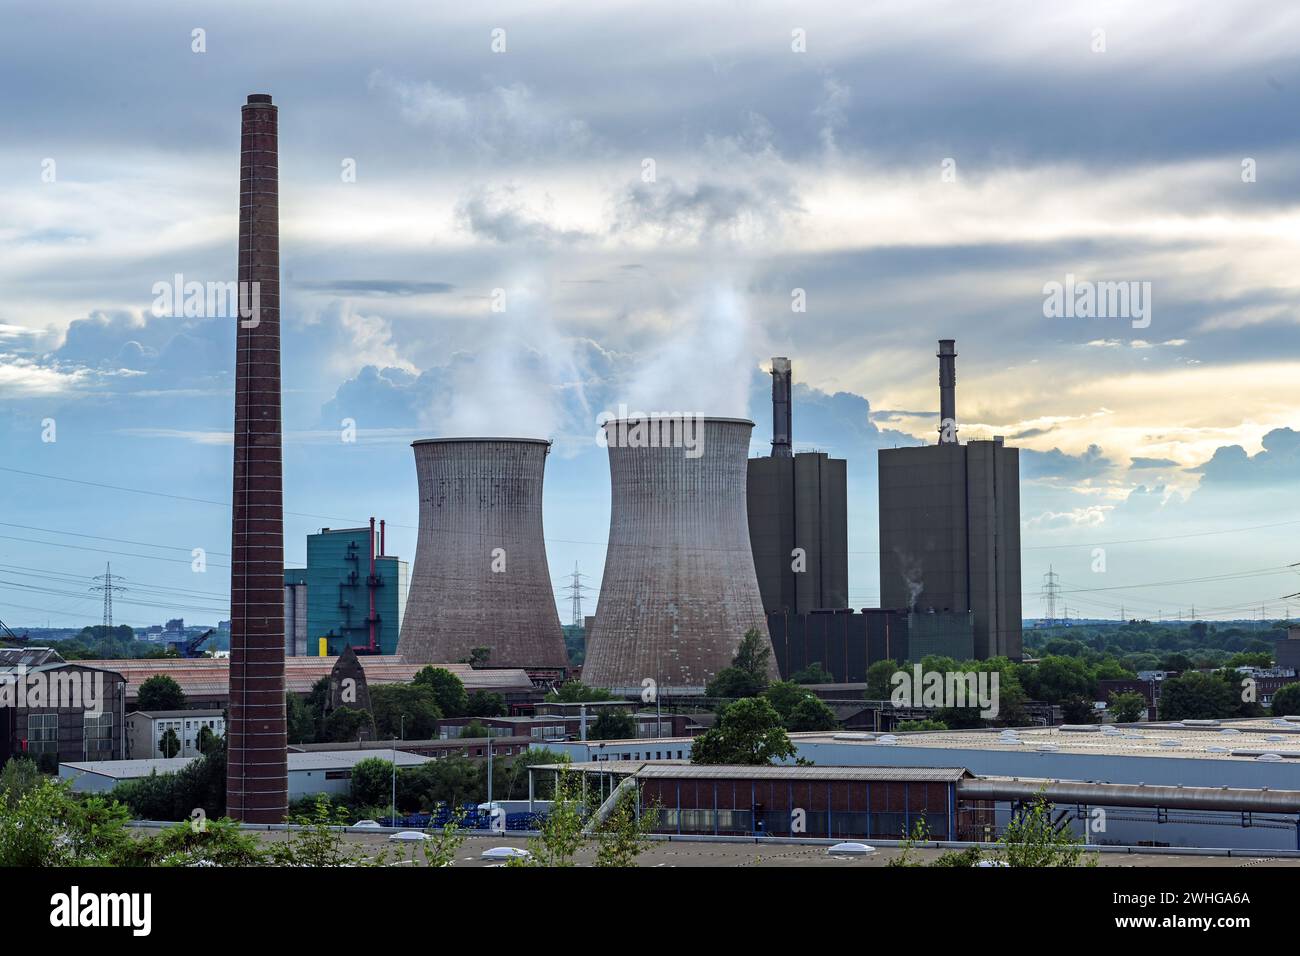 Tours et pollution de l'industrie sidérurgique à Duisburg avec hauts fourneaux, four à coke et centrale électrique contre un sl trouble Banque D'Images